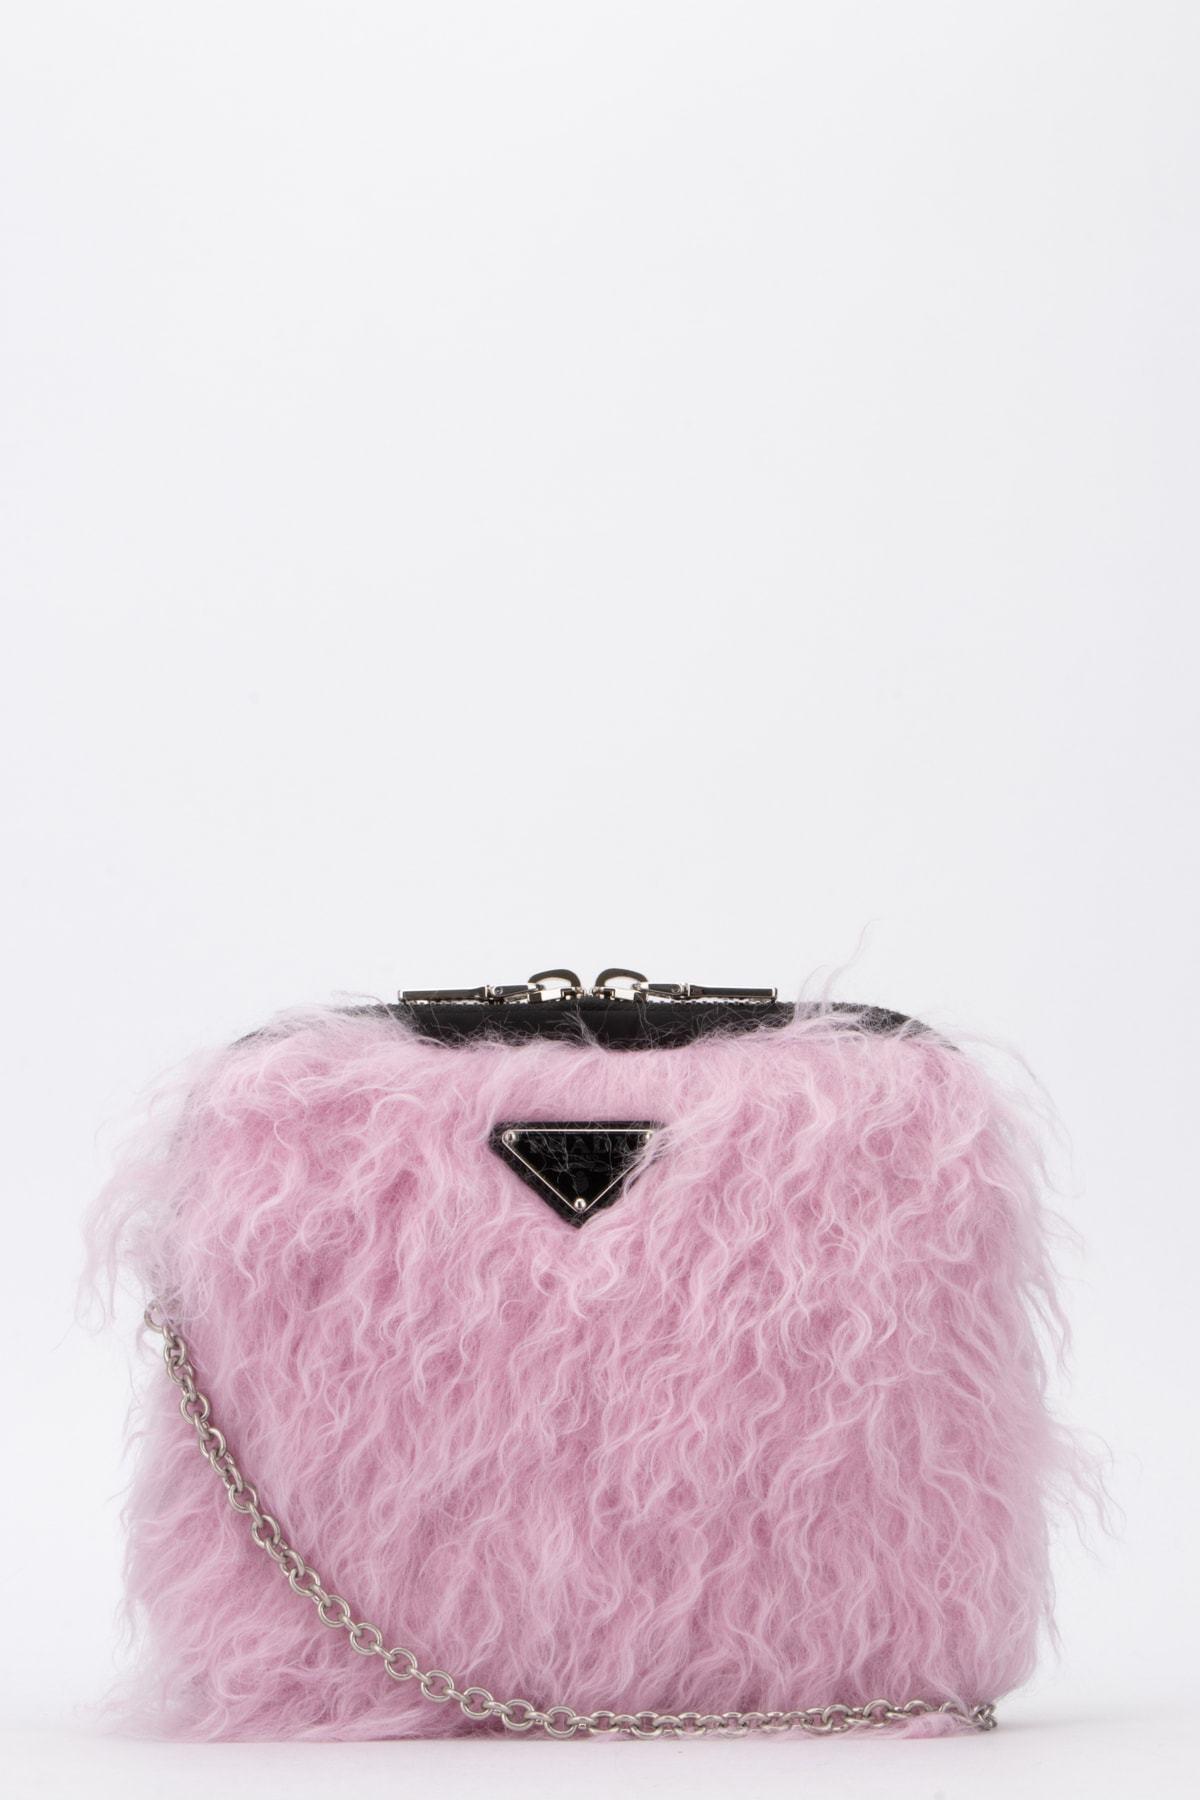 Prada Fur Clutch Bag in Pink - Lyst